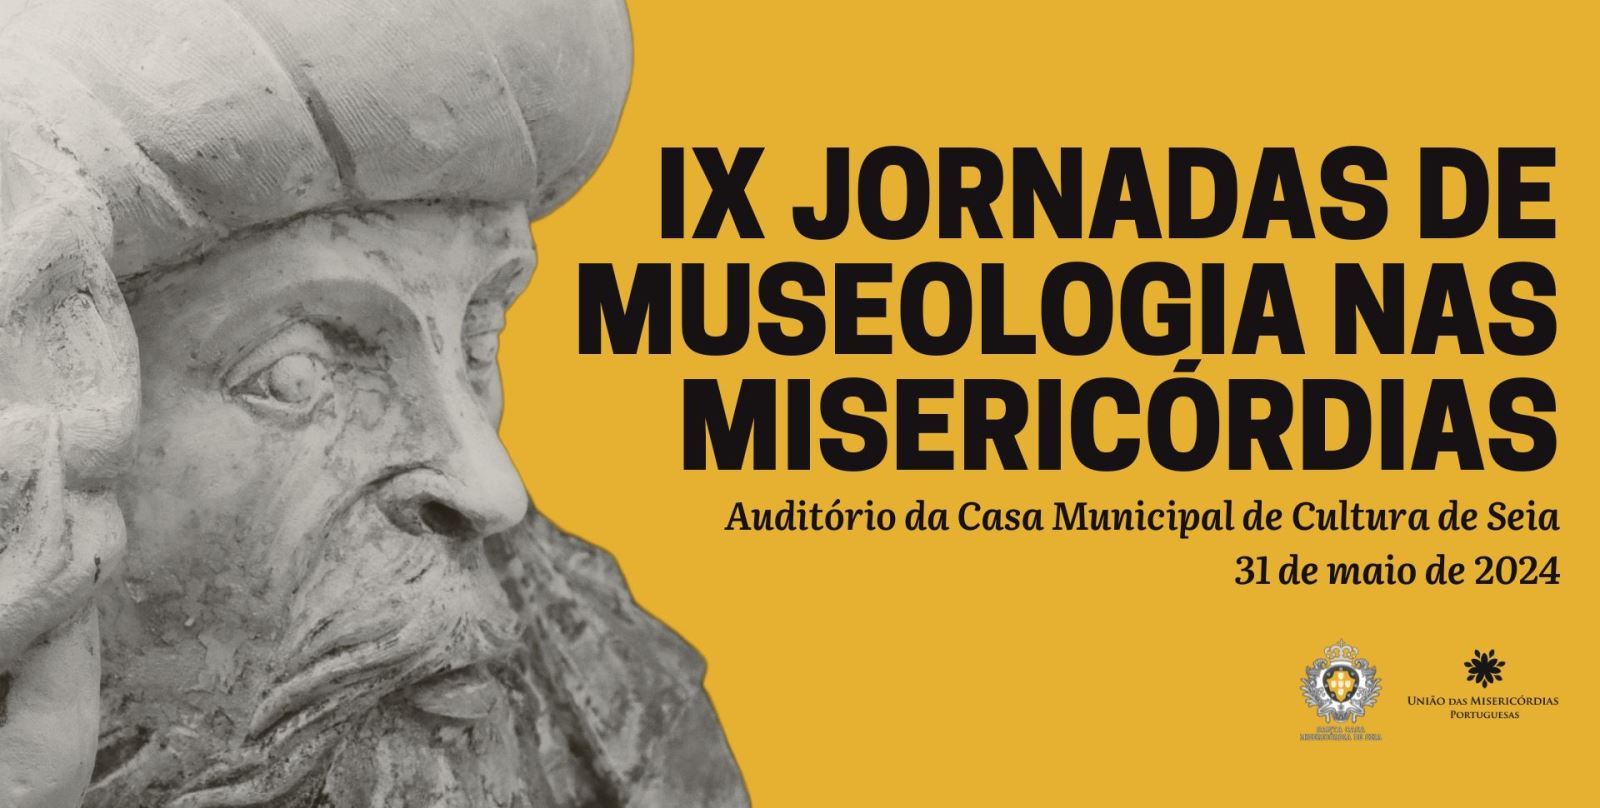 Inscrições para IX Jornadas de Museologia nas Misericórdias